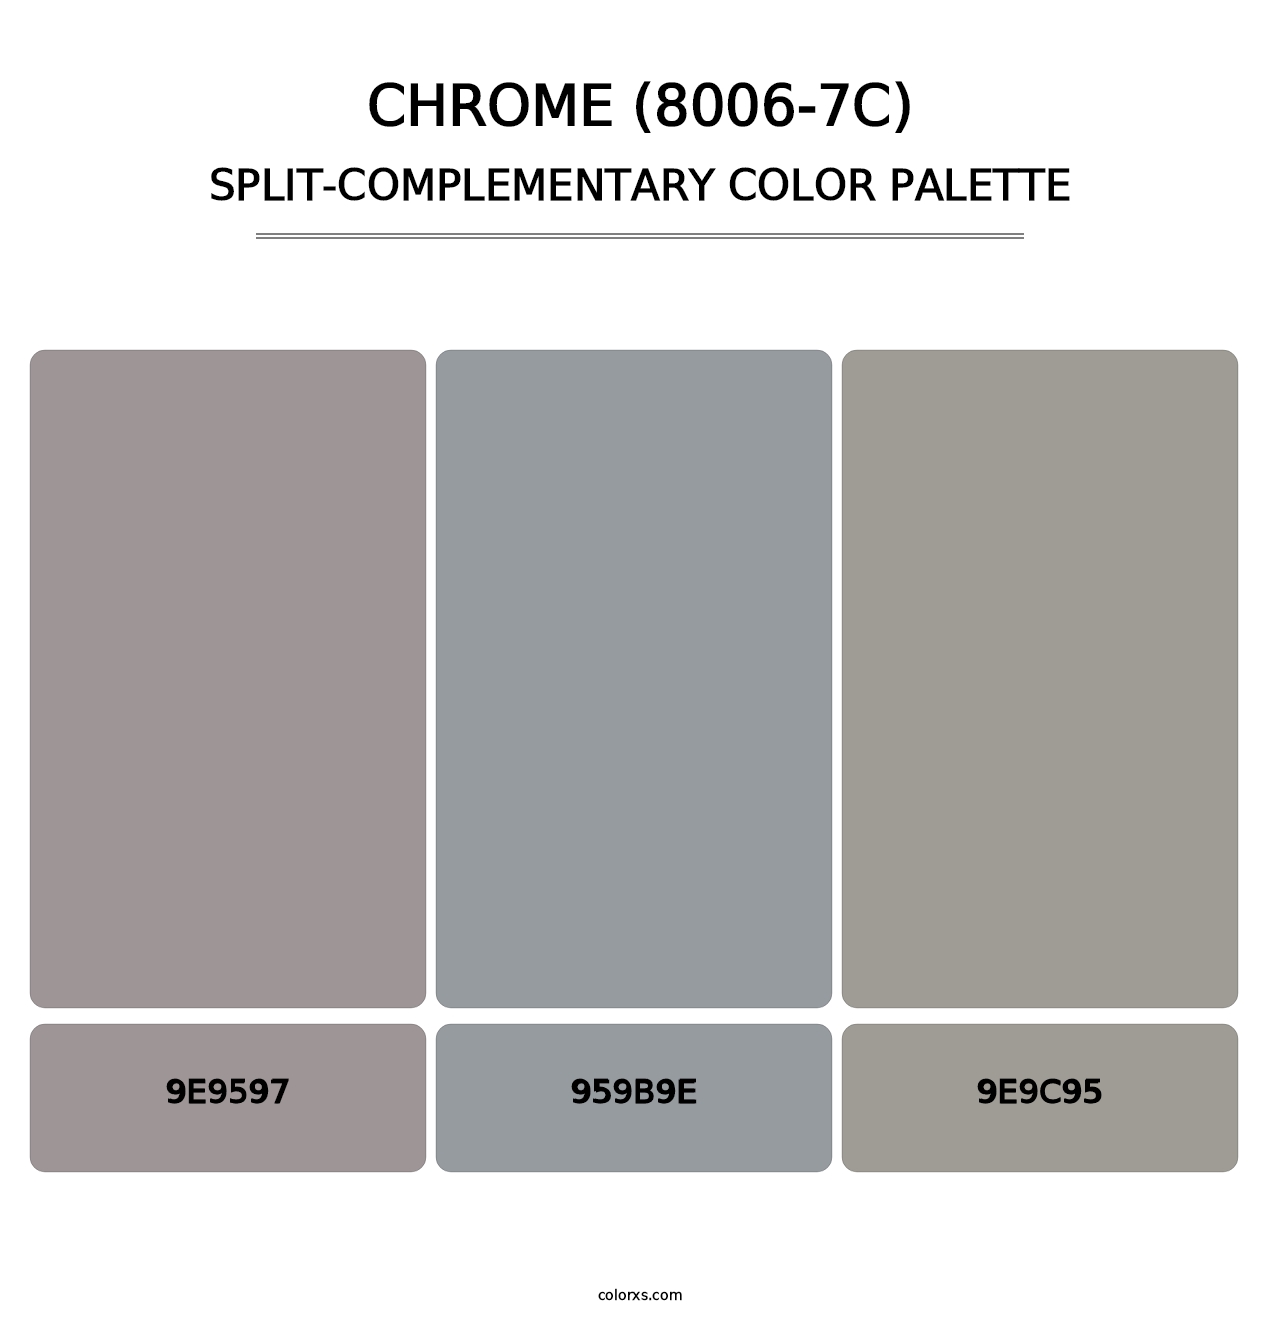 Chrome (8006-7C) - Split-Complementary Color Palette